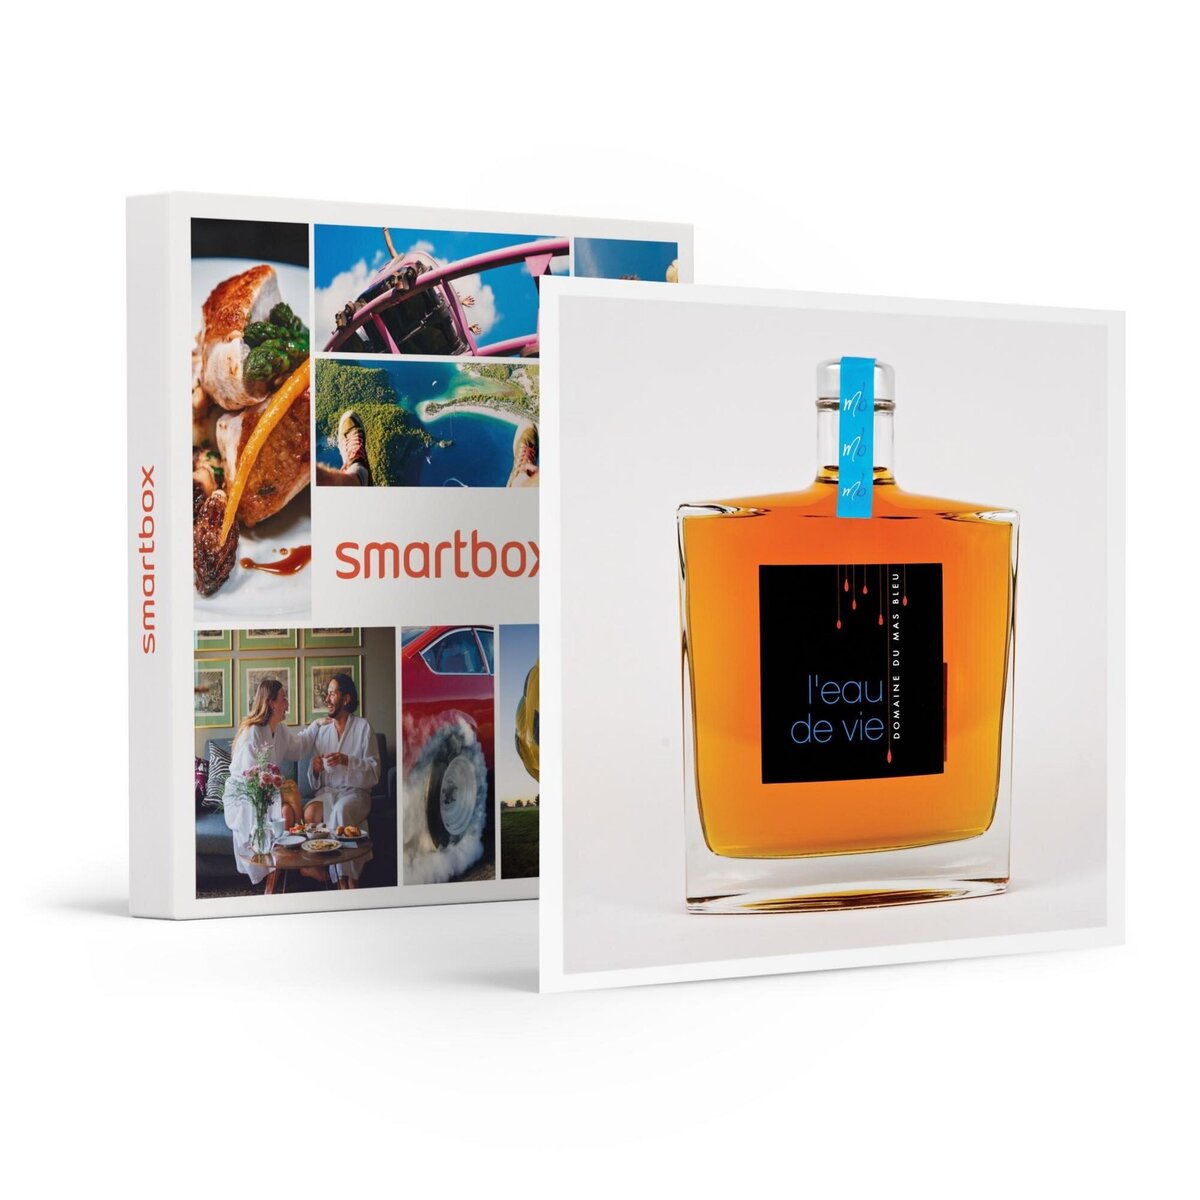 Smartbox Assortiment de 3 produits artisanaux de Provence livré à domicile - Coffret Cadeau Gastronomie